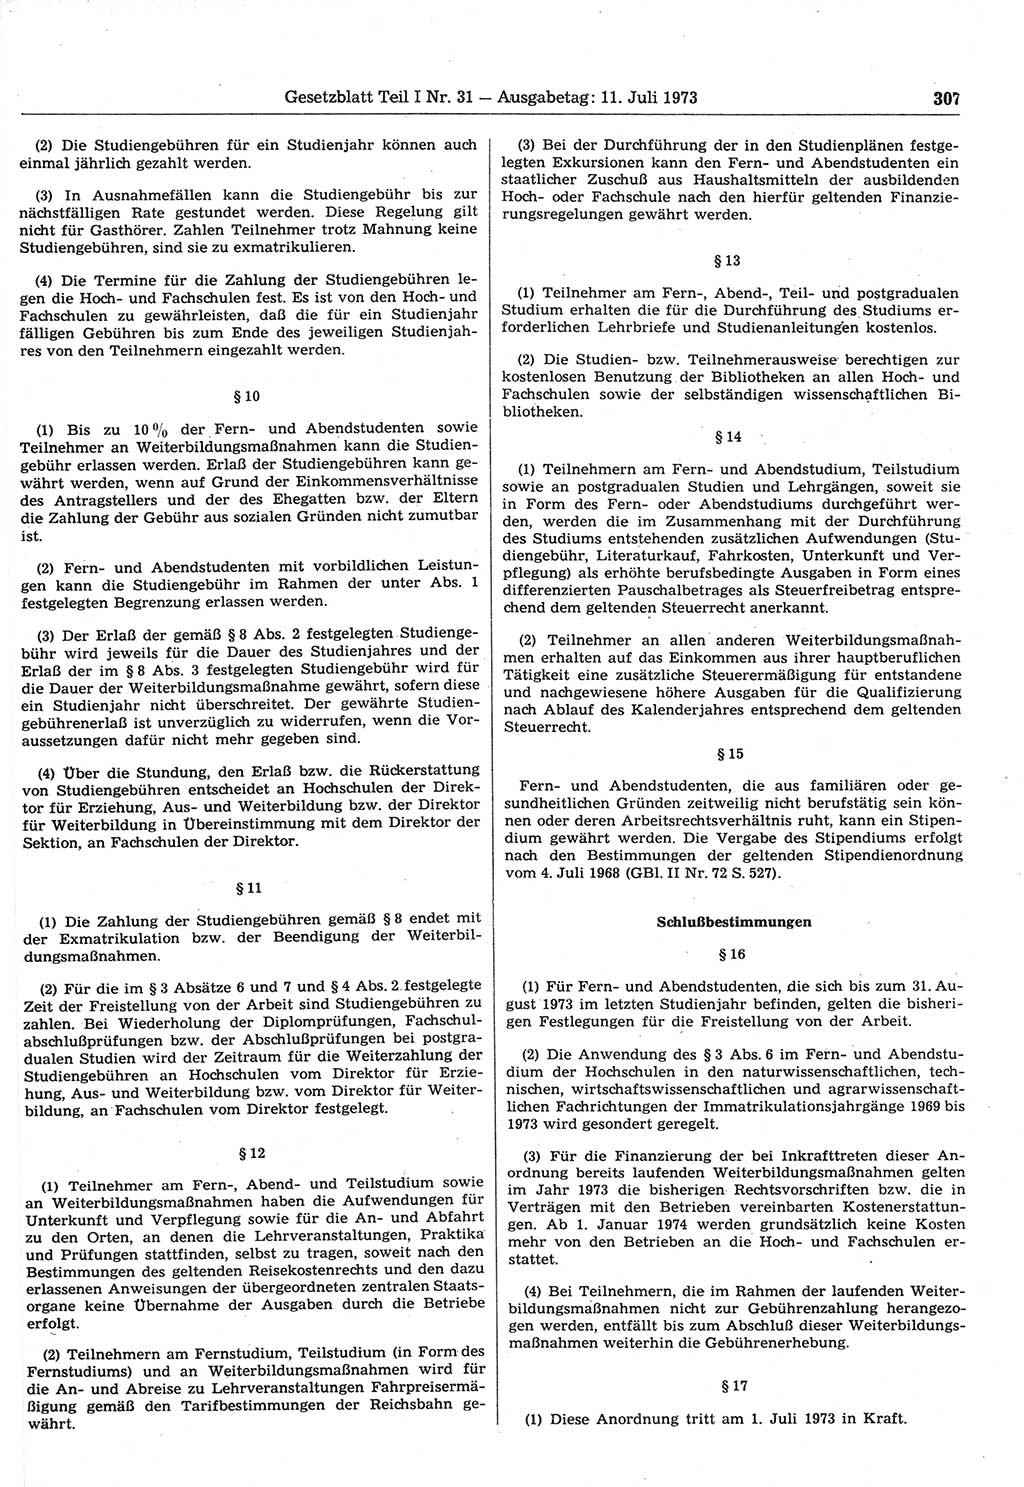 Gesetzblatt (GBl.) der Deutschen Demokratischen Republik (DDR) Teil Ⅰ 1973, Seite 307 (GBl. DDR Ⅰ 1973, S. 307)